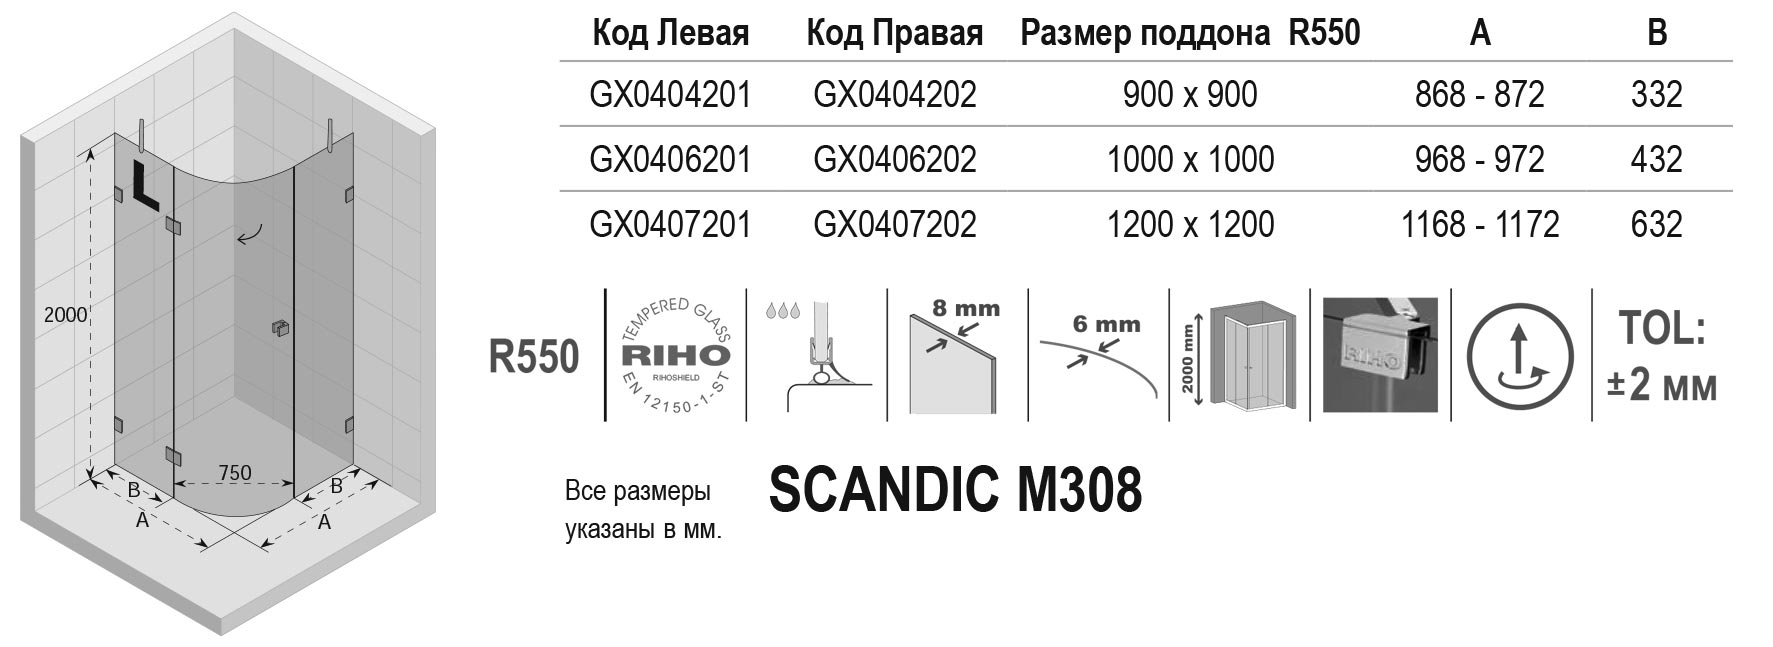 Чертёж Riho Scandic M308 GX0404201